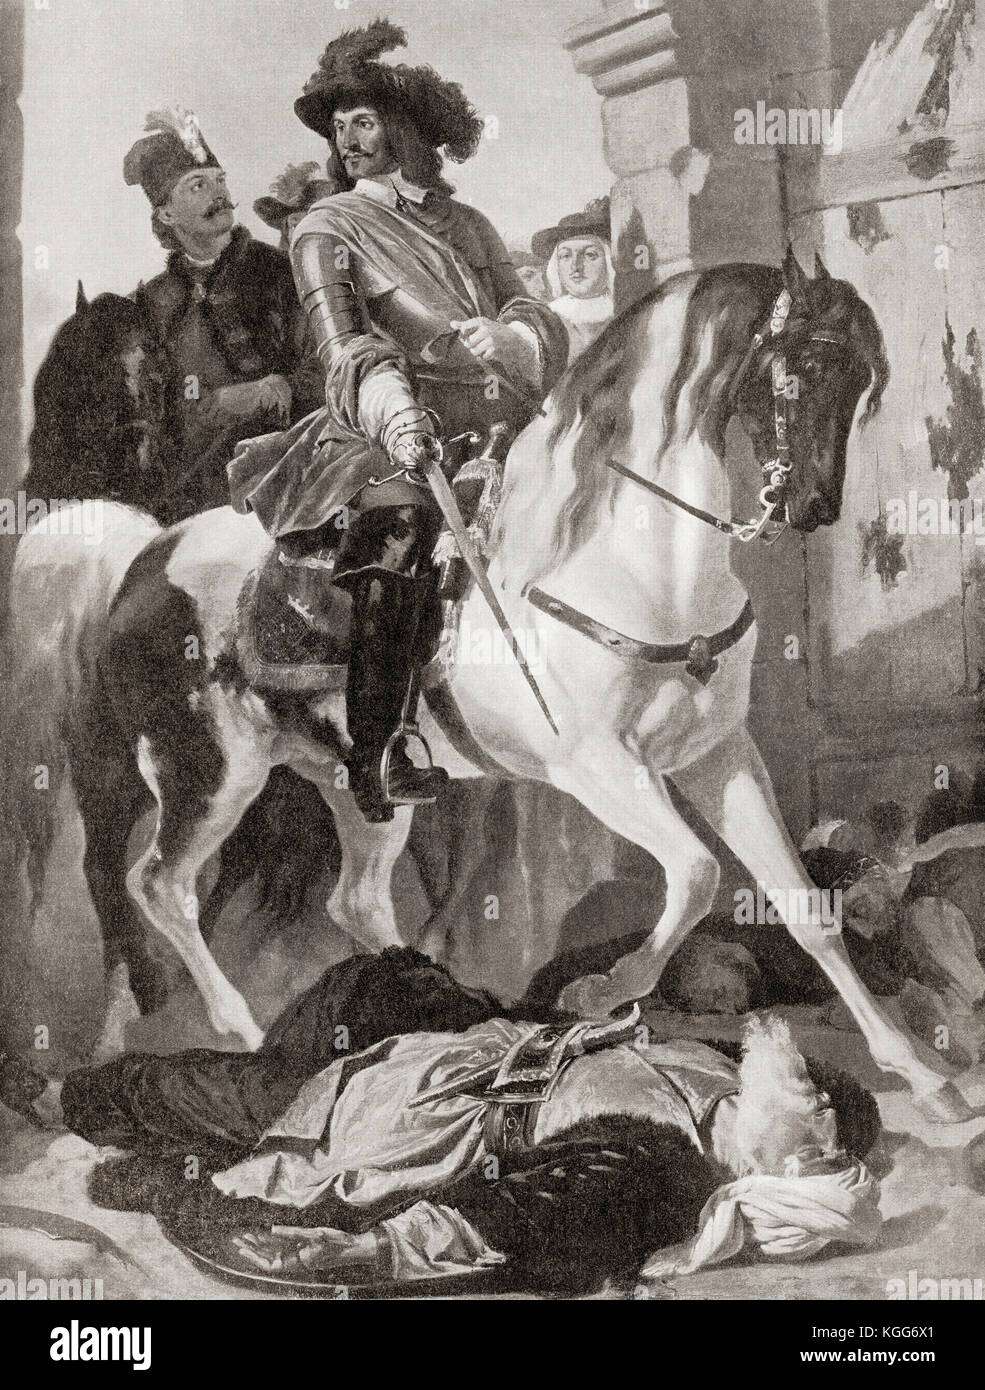 Carlos V entra en la ciudad de buda, después de derrotar a los turcos al final del segundo sitio de Buda en 1686. A partir de la historia de Hutchinson de las naciones, publicado en 1915. Foto de stock